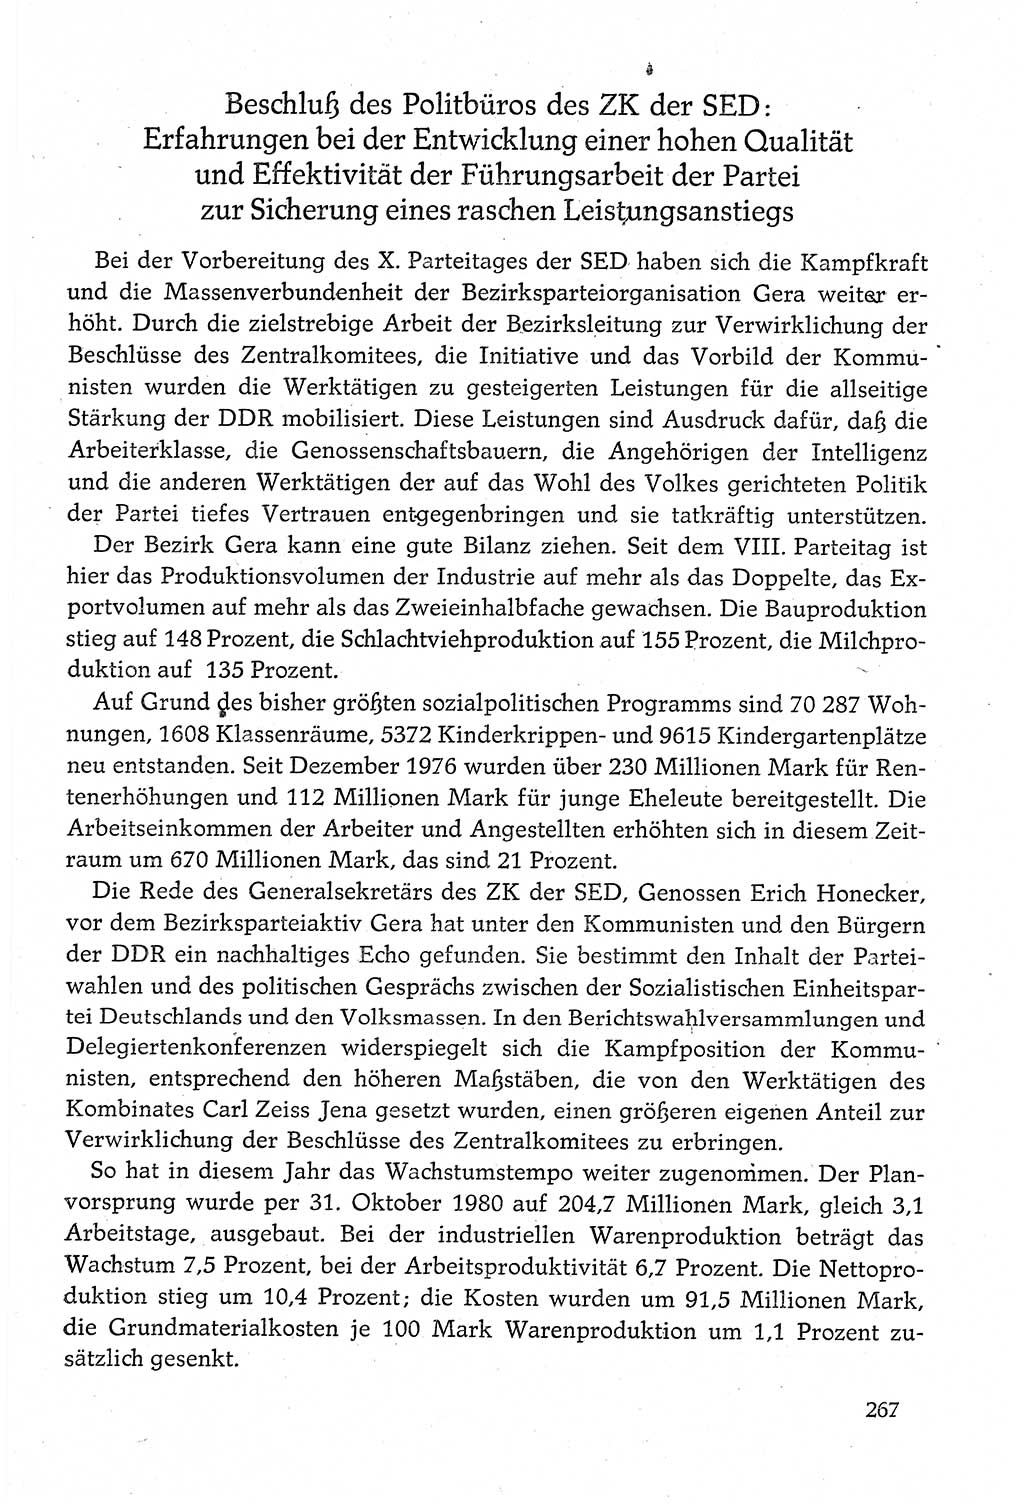 Dokumente der Sozialistischen Einheitspartei Deutschlands (SED) [Deutsche Demokratische Republik (DDR)] 1980-1981, Seite 267 (Dok. SED DDR 1980-1981, S. 267)